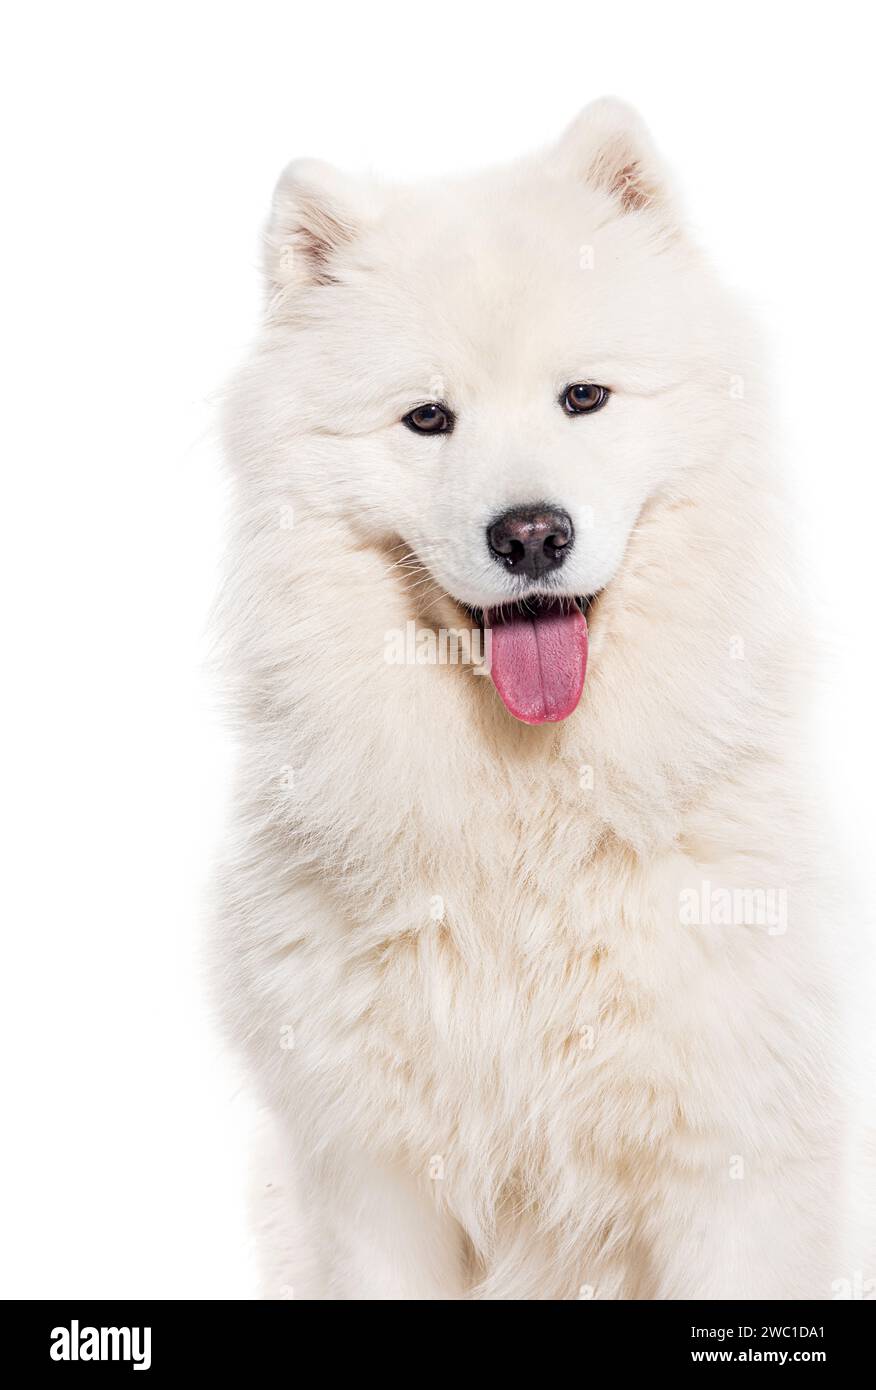 Kopffoto eines weißen, auf weiß isolierten Samoiden-Hundes, der in die Kamera schaut Stockfoto